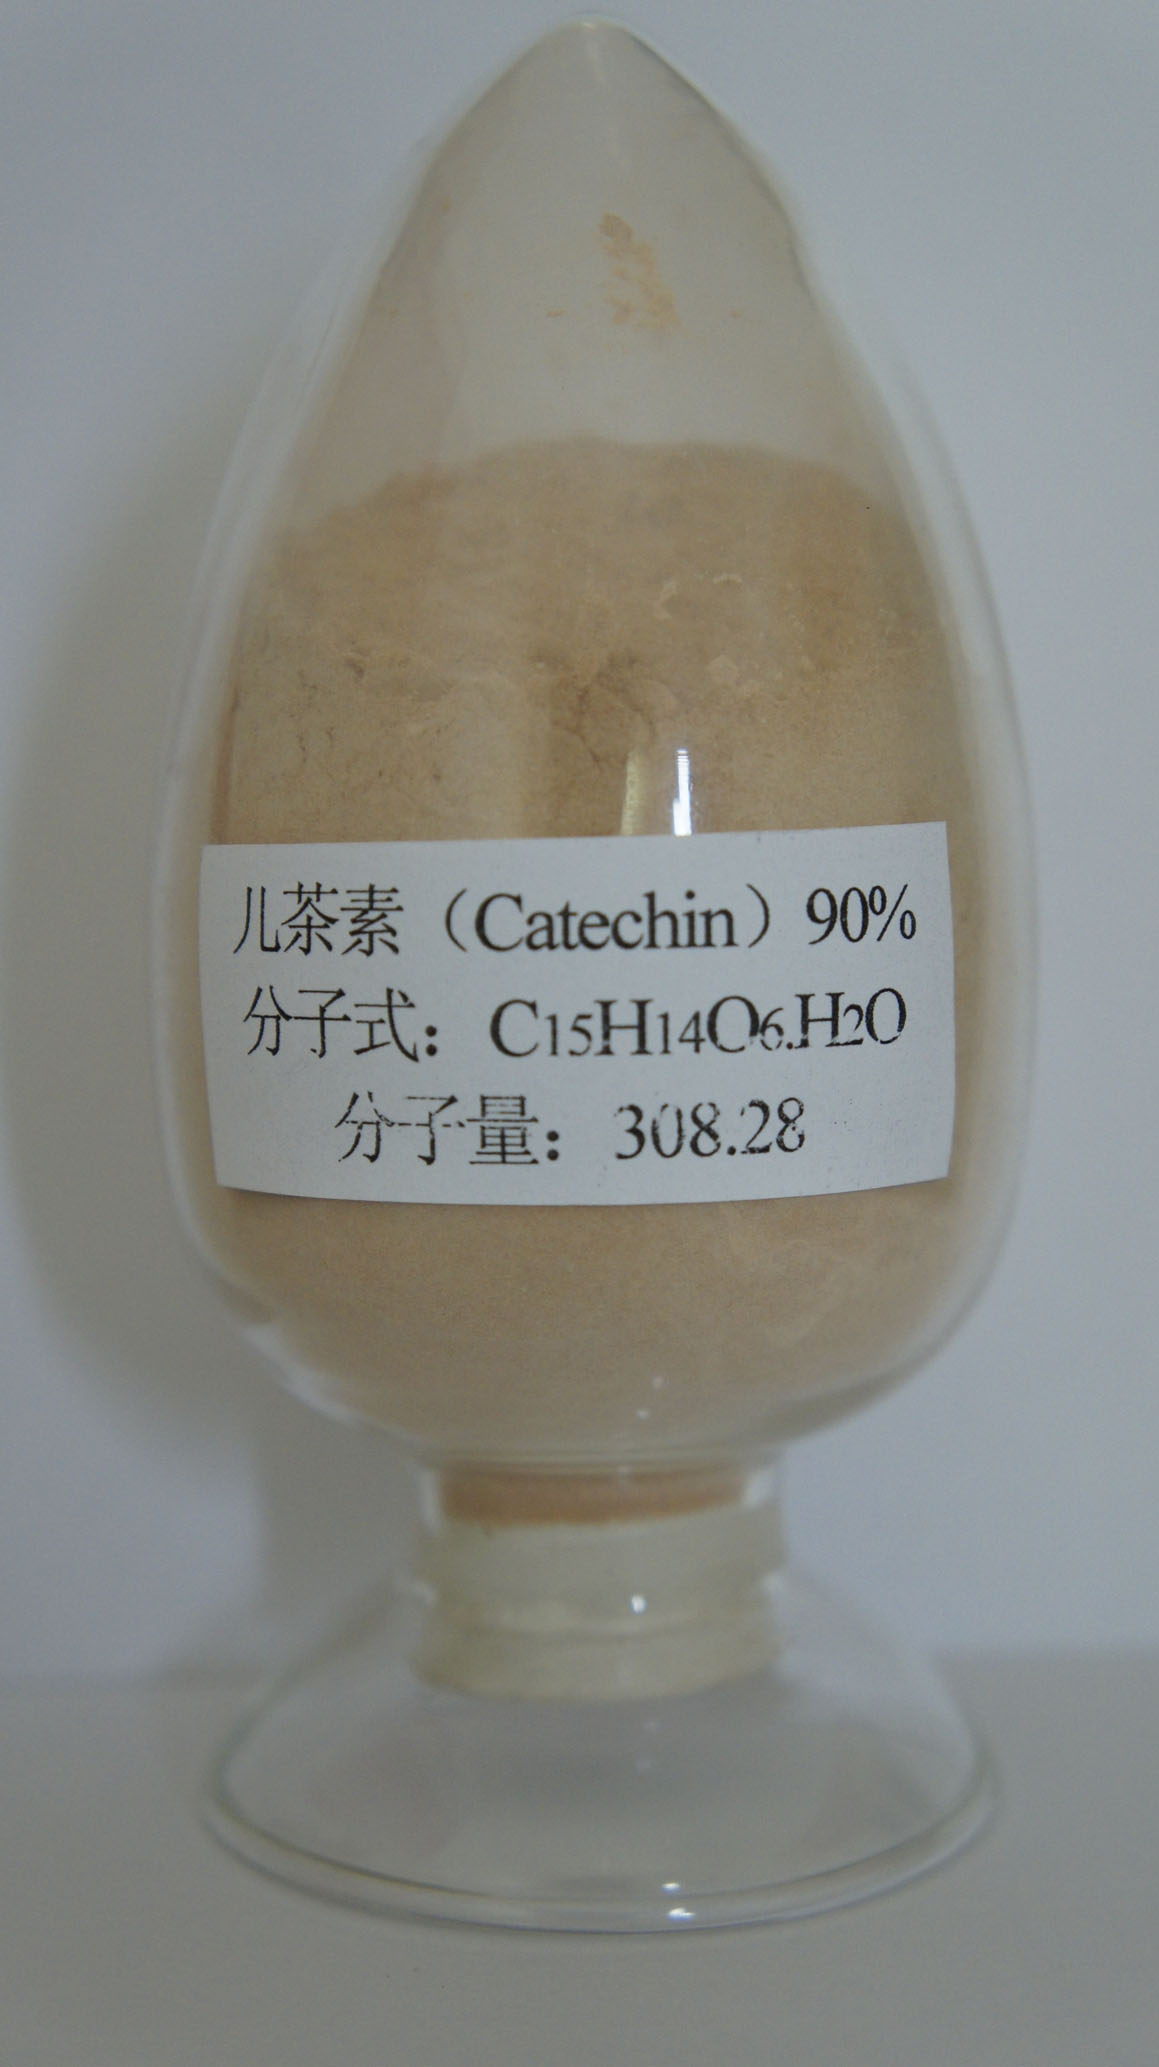 长期供应茶叶提取物儿茶素25-98%,Catechins